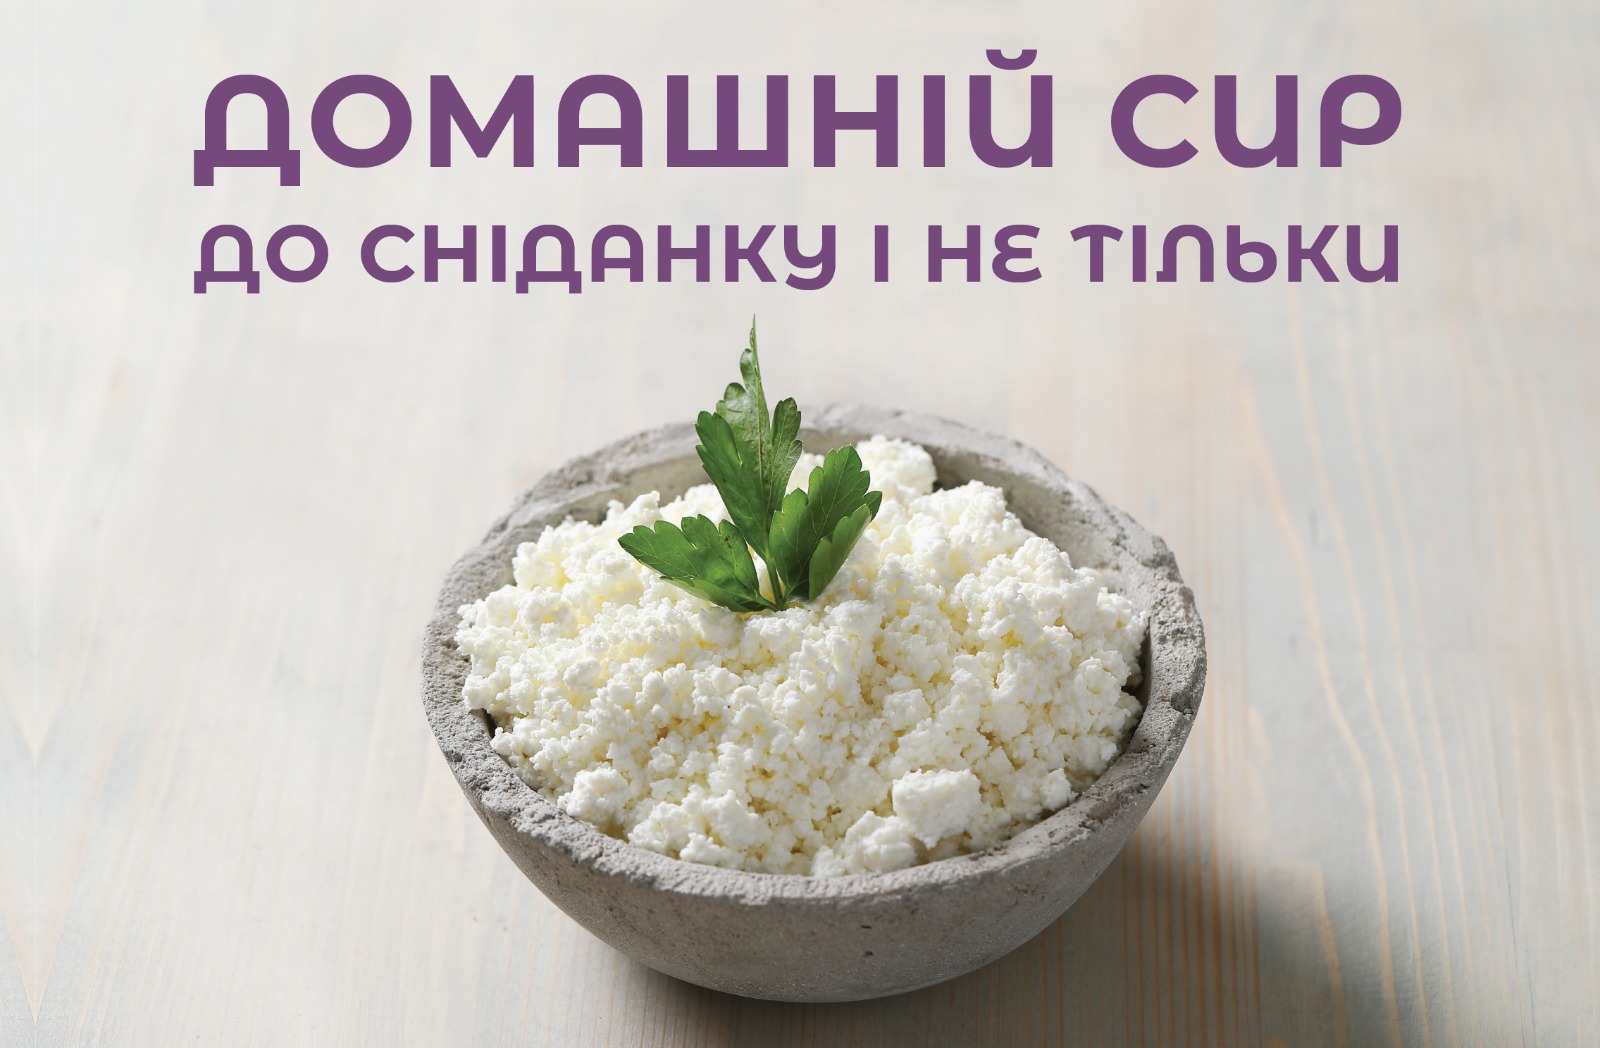 На зображенні домашній сир у керамічній тарілці у верхній частині напис: Домашній сир до сніданку і не тільки.”